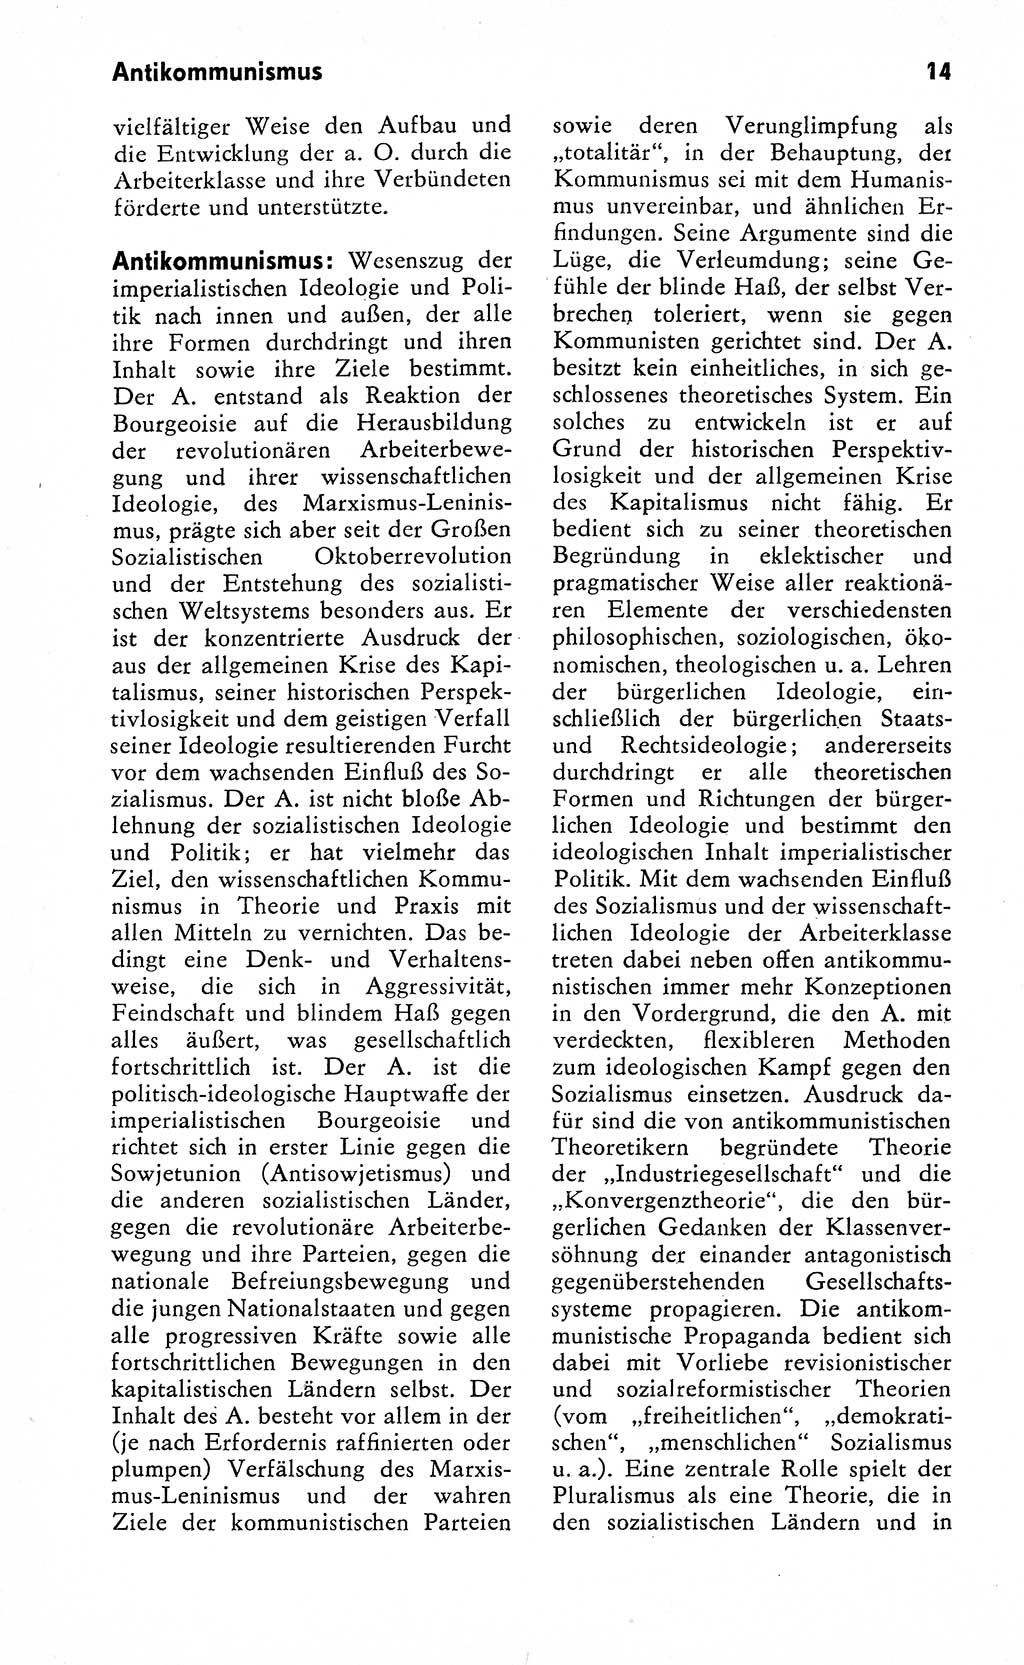 Wörterbuch zum sozialistischen Staat [Deutsche Demokratische Republik (DDR)] 1974, Seite 14 (Wb. soz. St. DDR 1974, S. 14)